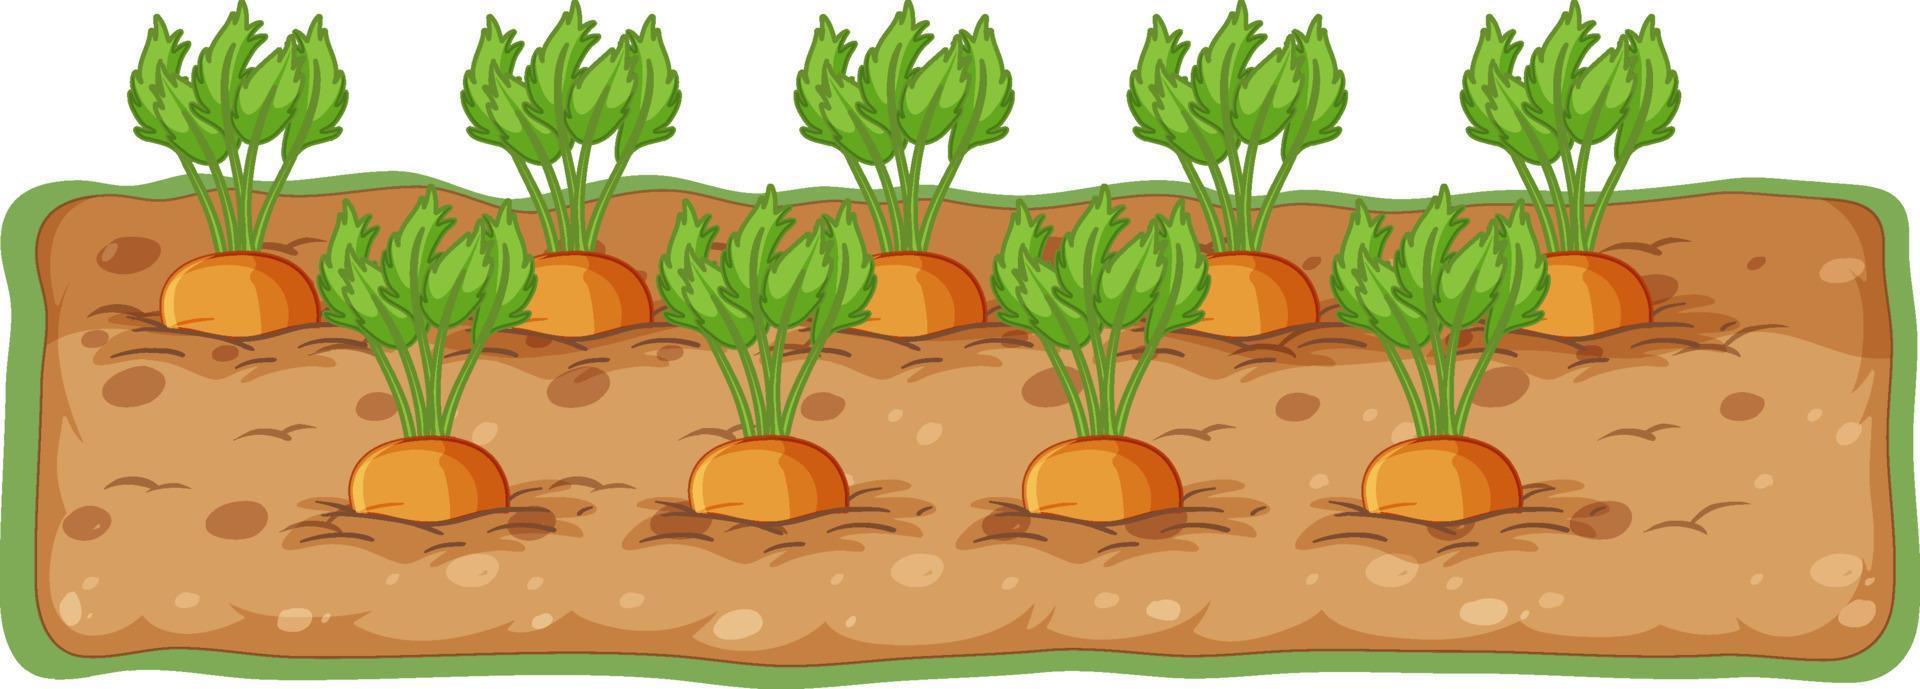 dibujos animados de zanahorias que crecen en el suelo vector